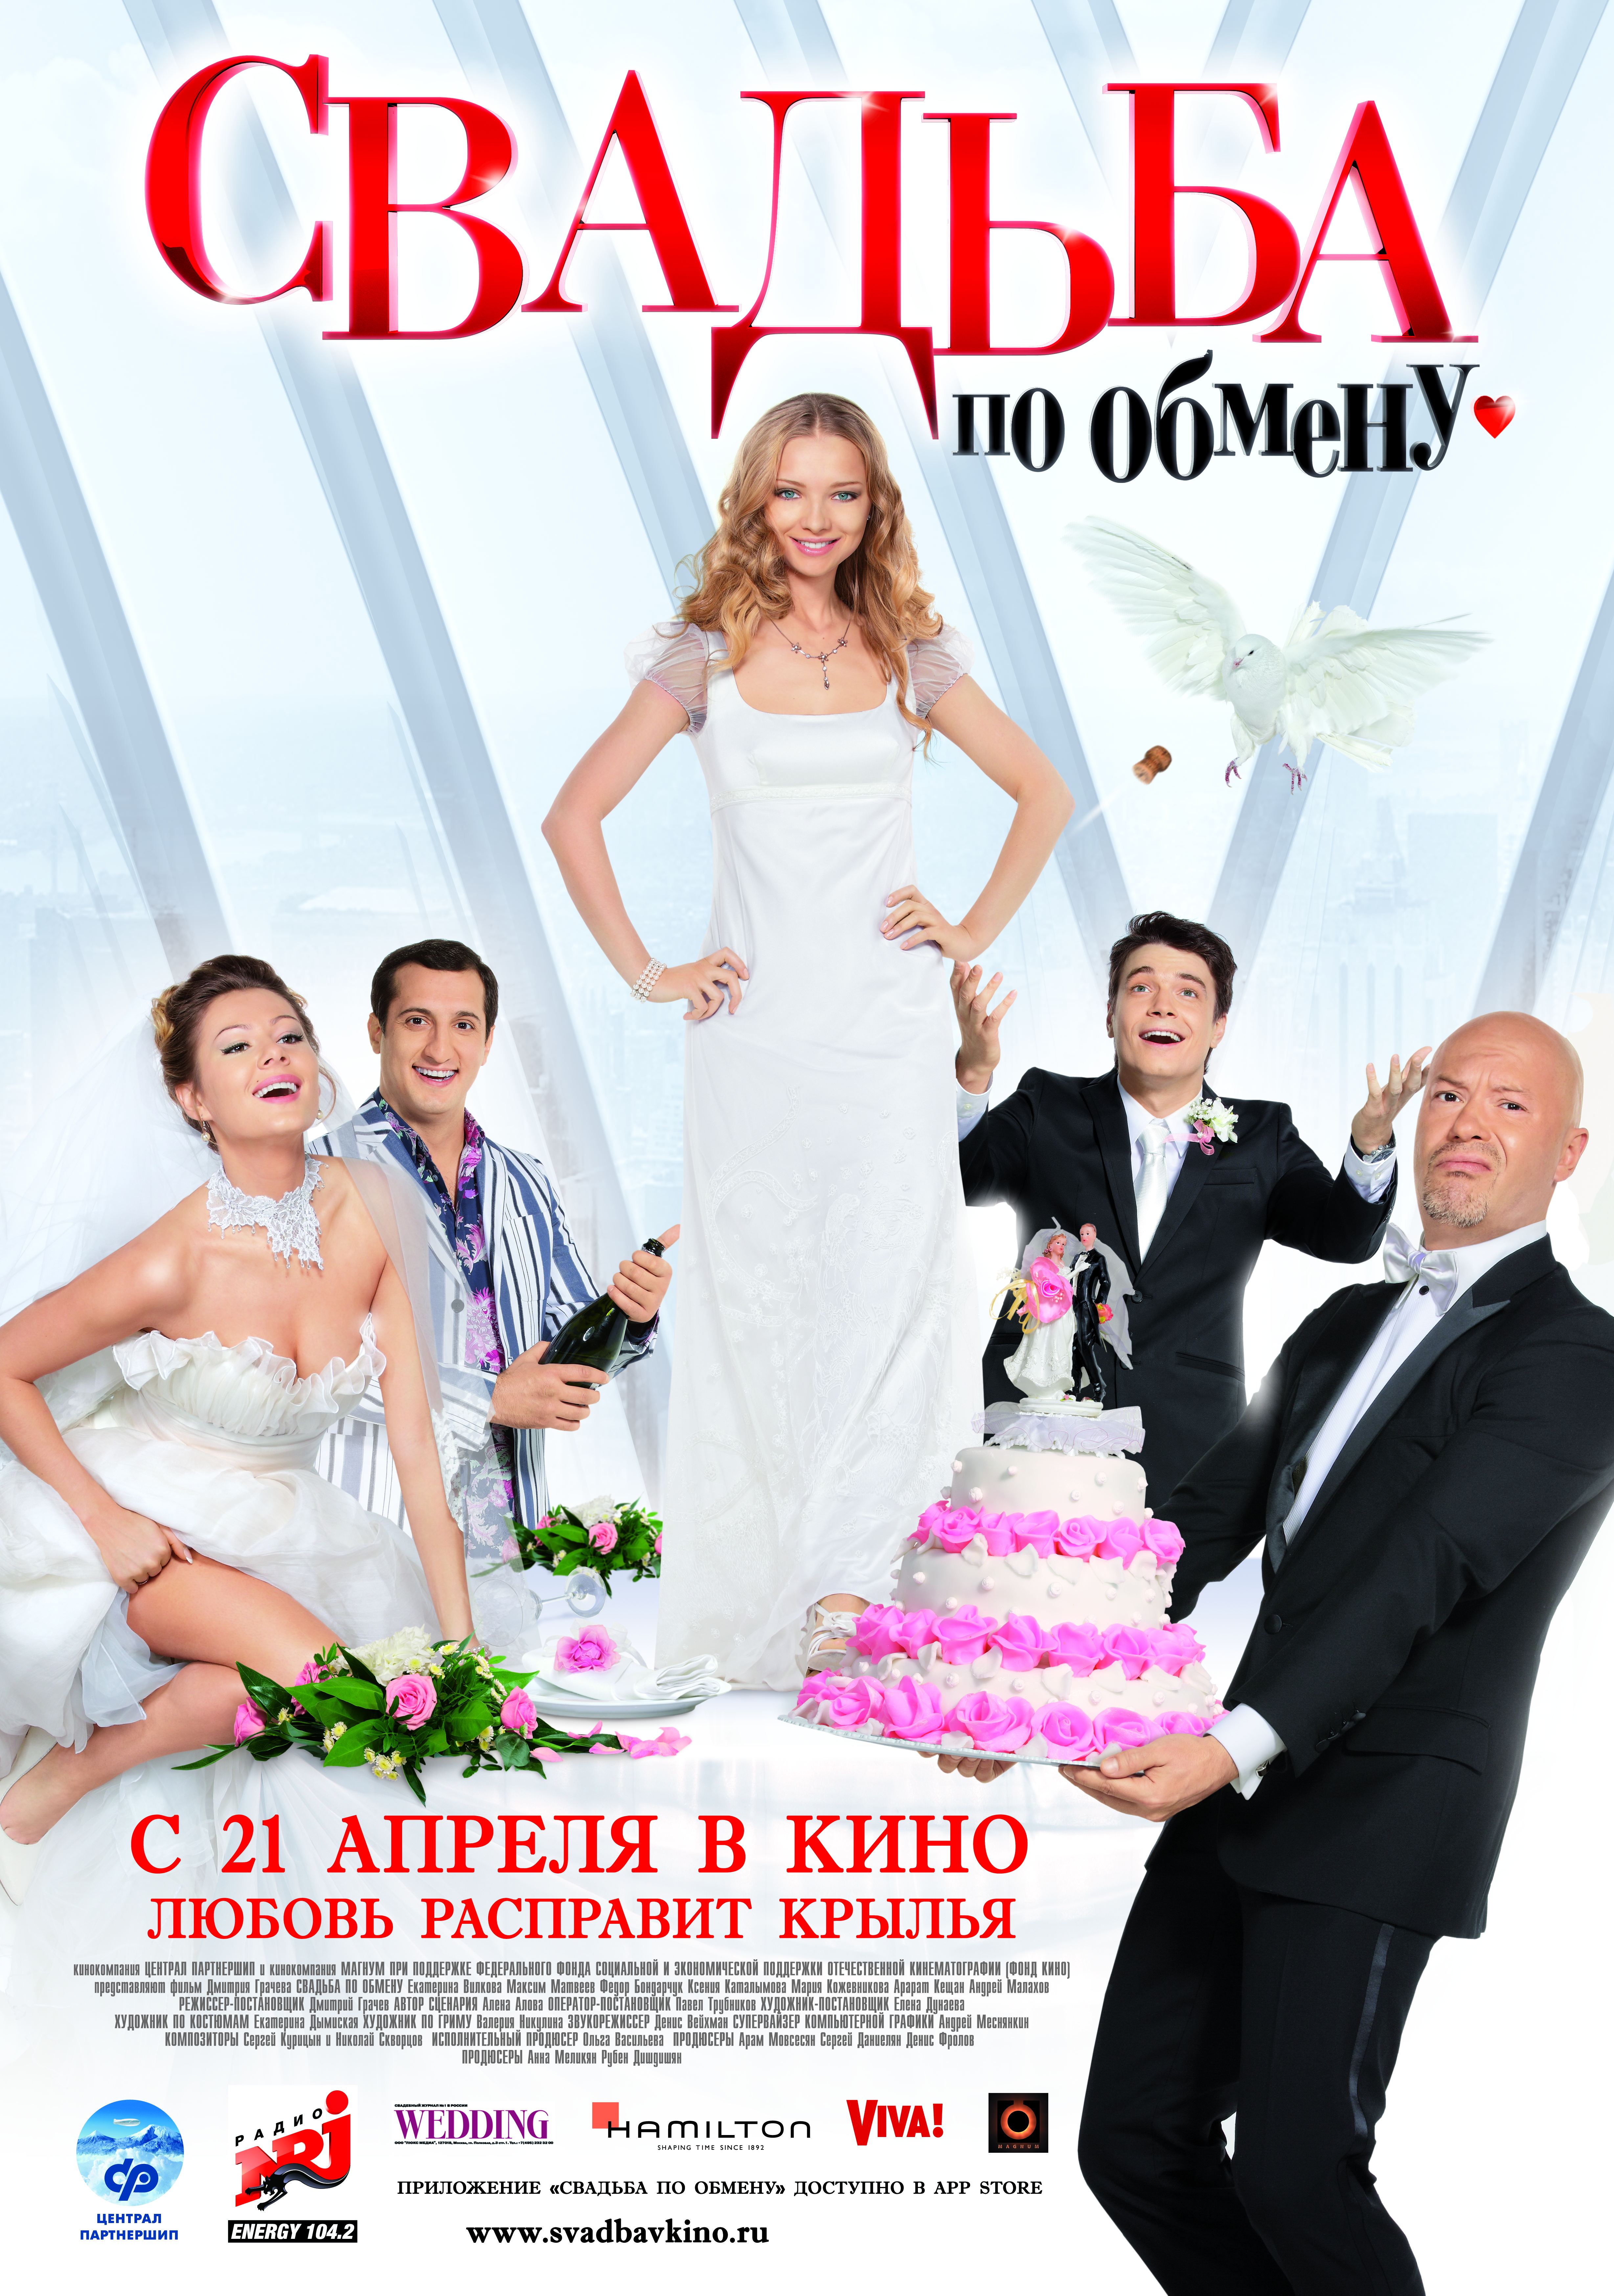 Сексуальная Екатерина Вилкова В Свадебном Платье – Свадьба По Обмену 2010